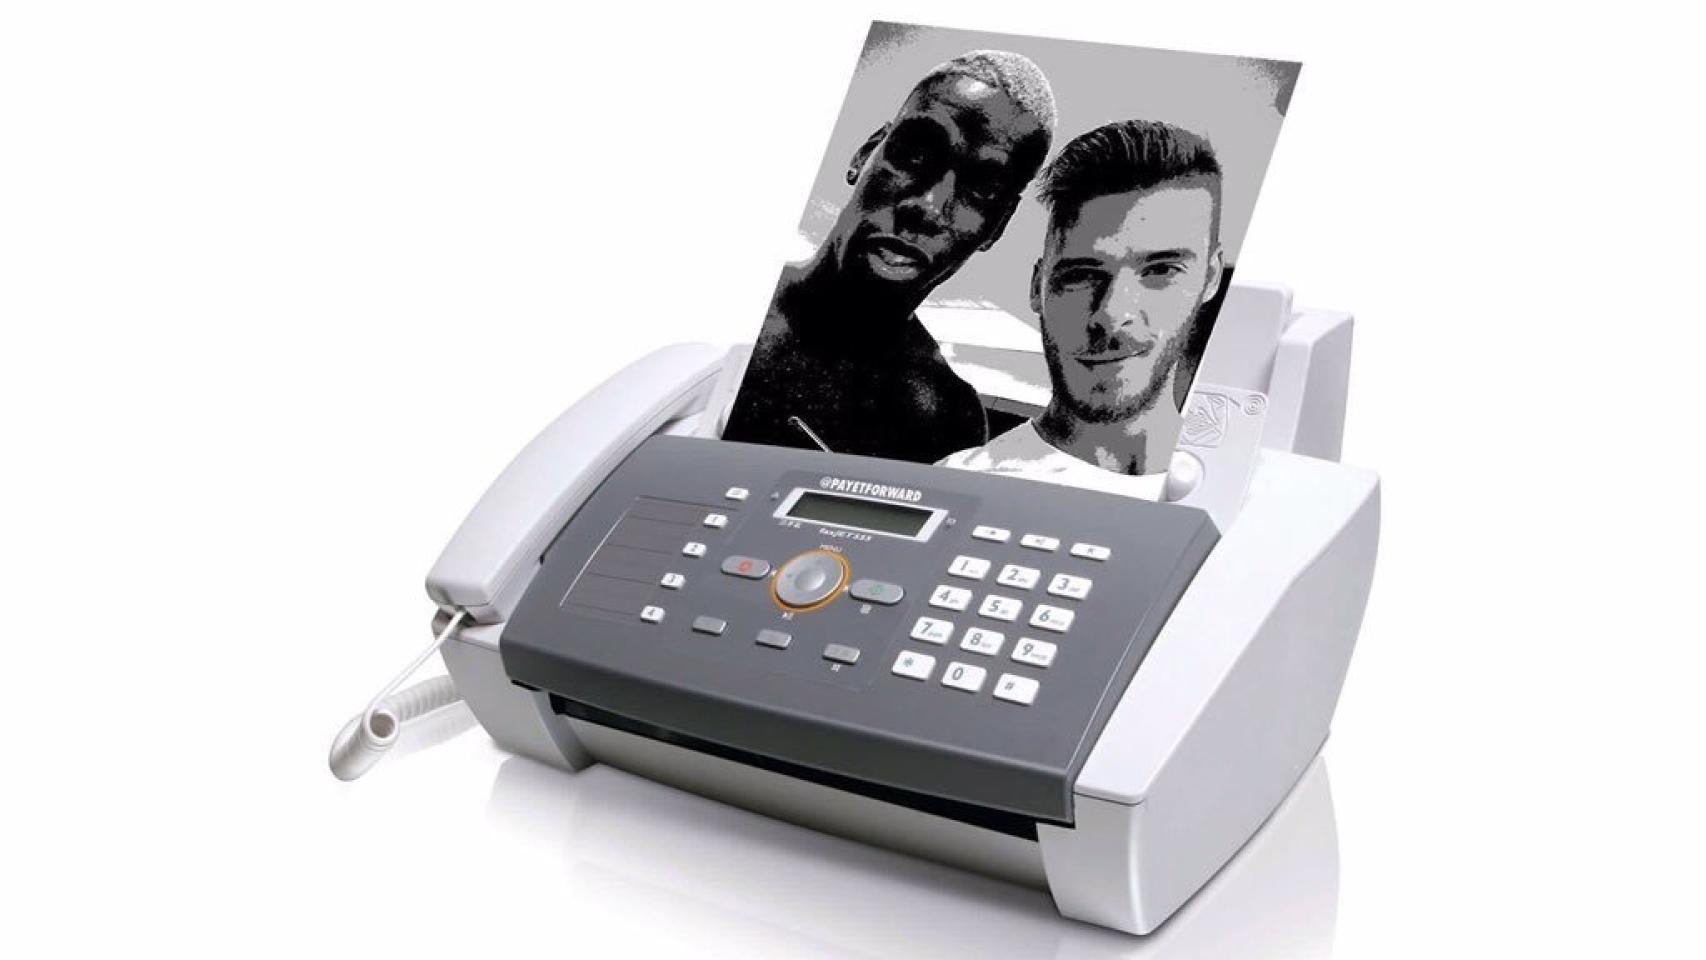 El fax del Real Madrid y el Manchester United vuelve a hacerse viral